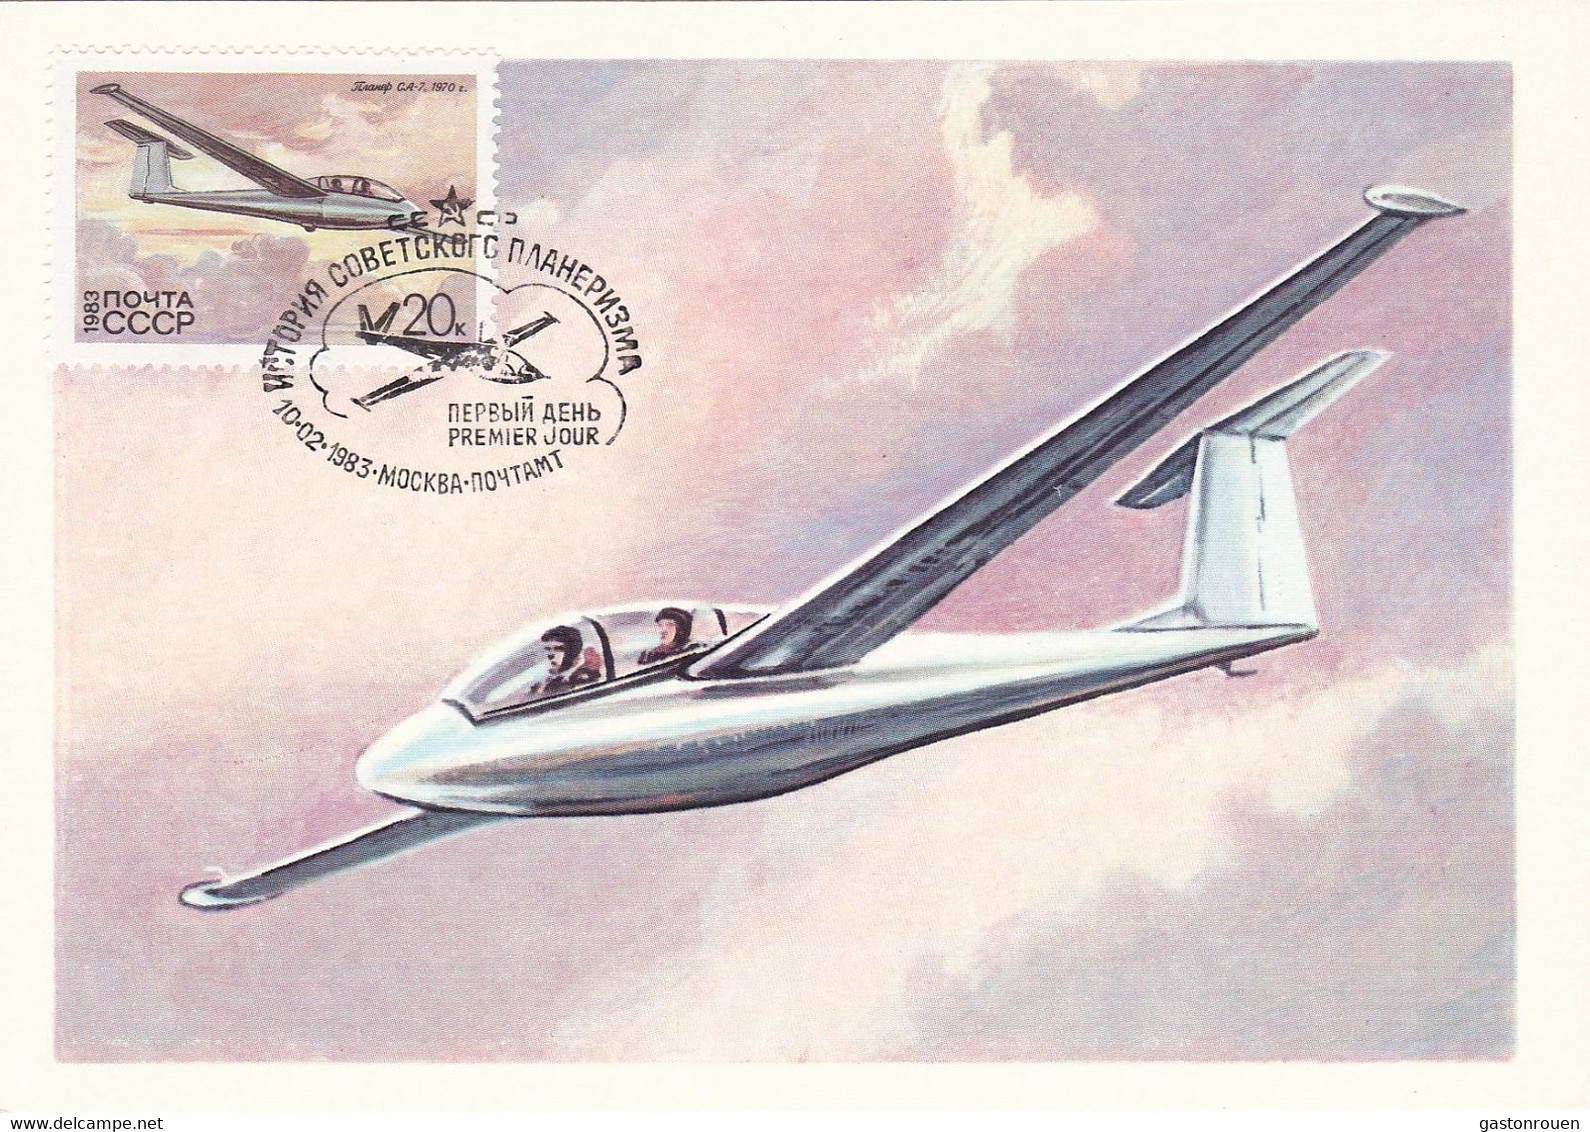 Carte Maximum Plane Avion Aviation Russia Russie 1983 Planeur - Cartes Maximum